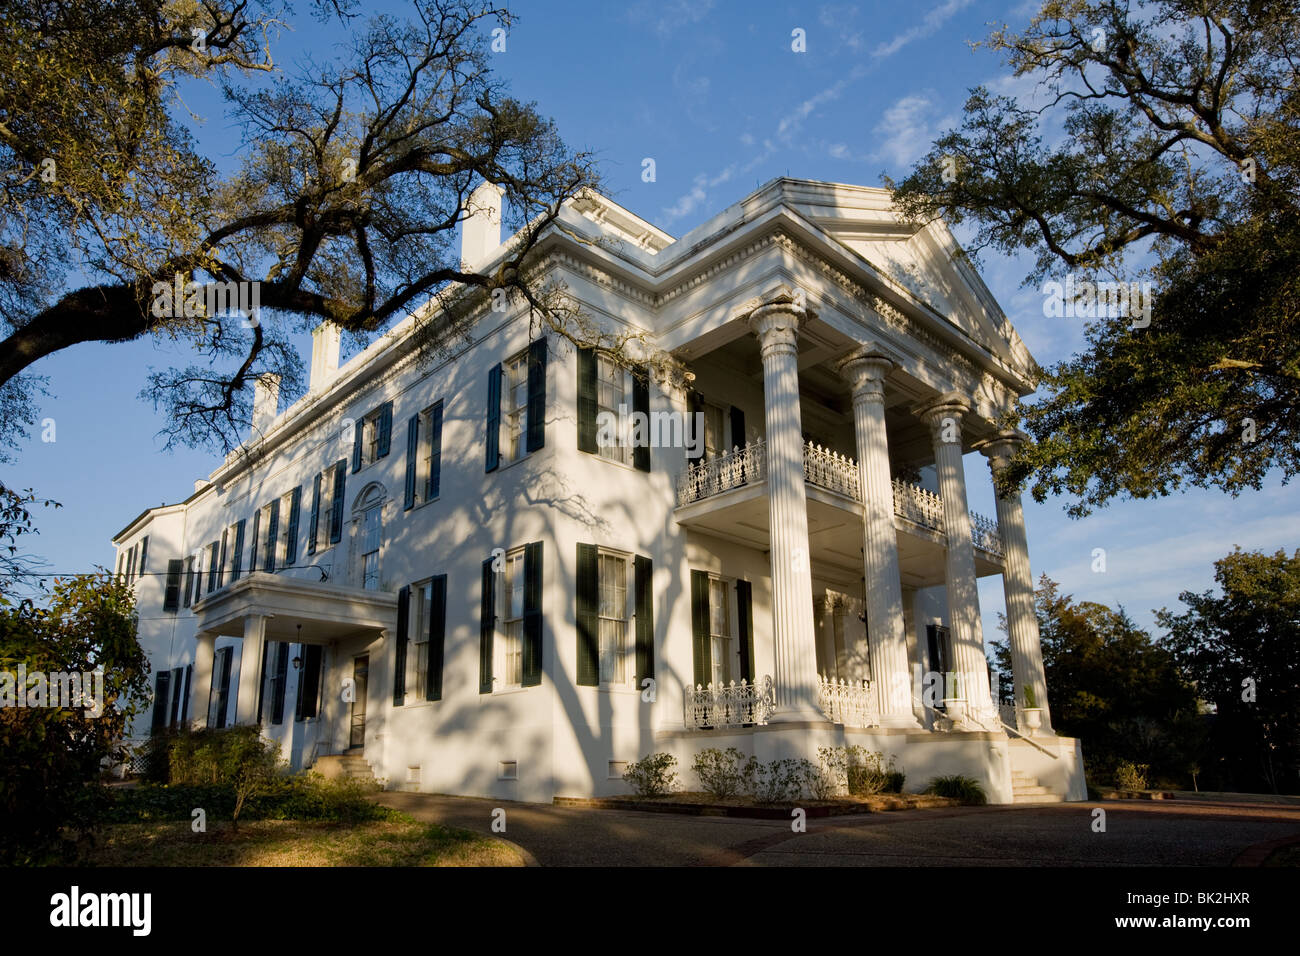 Stanton Hall, antebellum mansion in Natchez, Mississippi Stock Photo